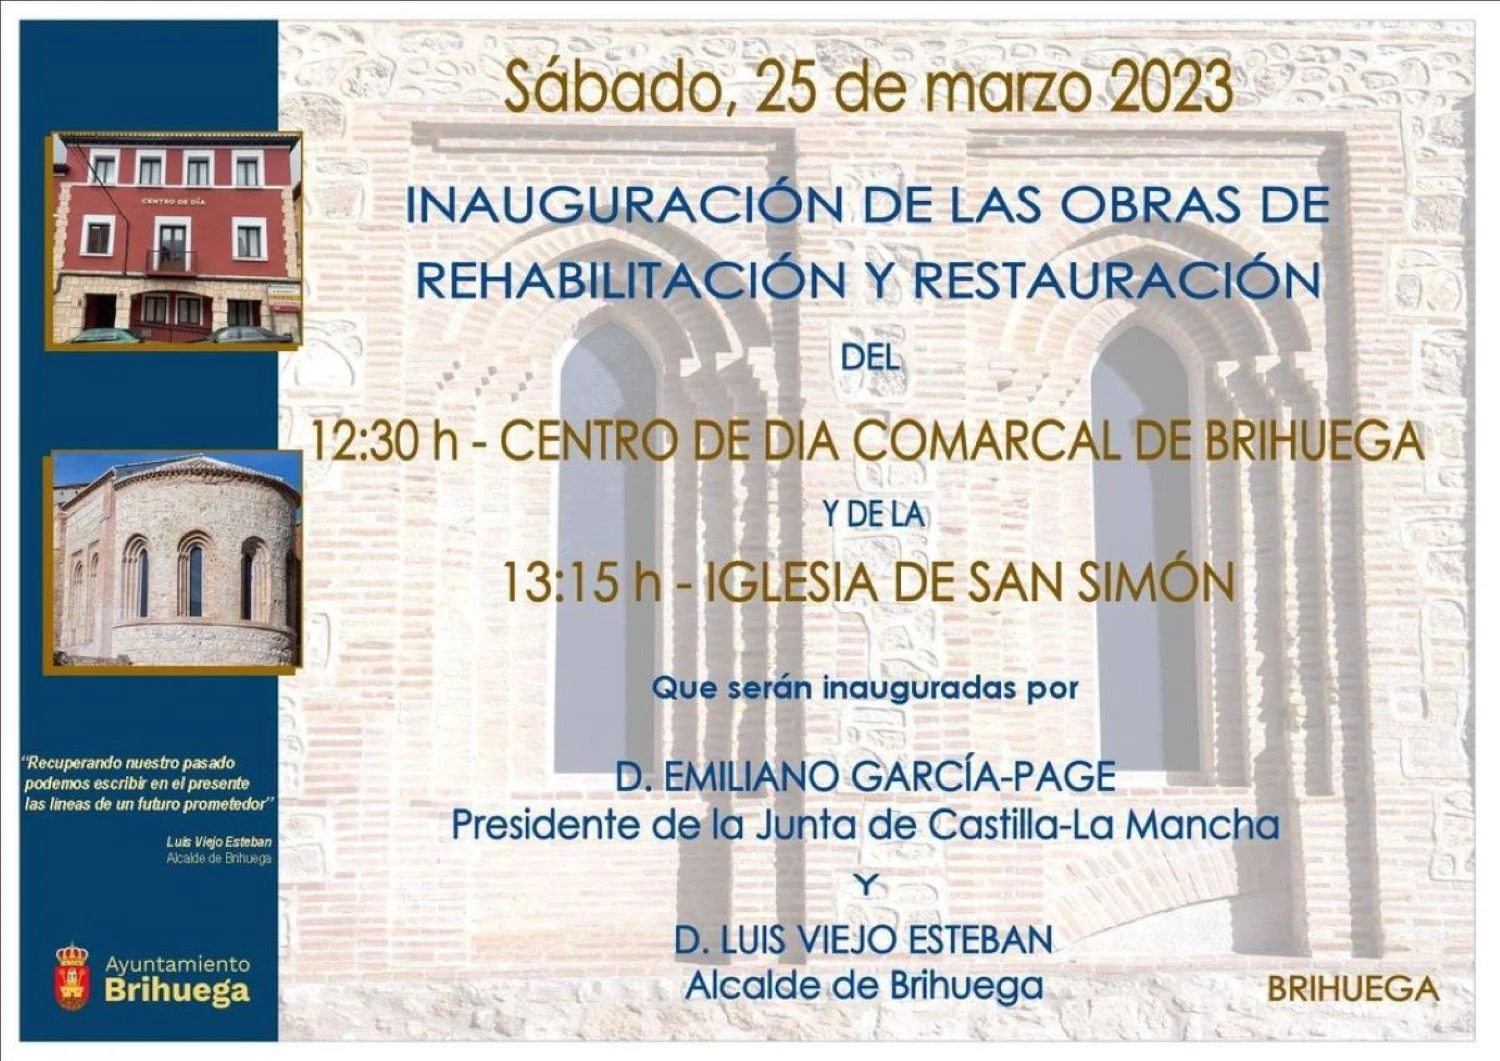 Sábado de inauguraciones en Brihuega: Restaurada la iglesia de San Simón y abre el Centro de Día Comarcal